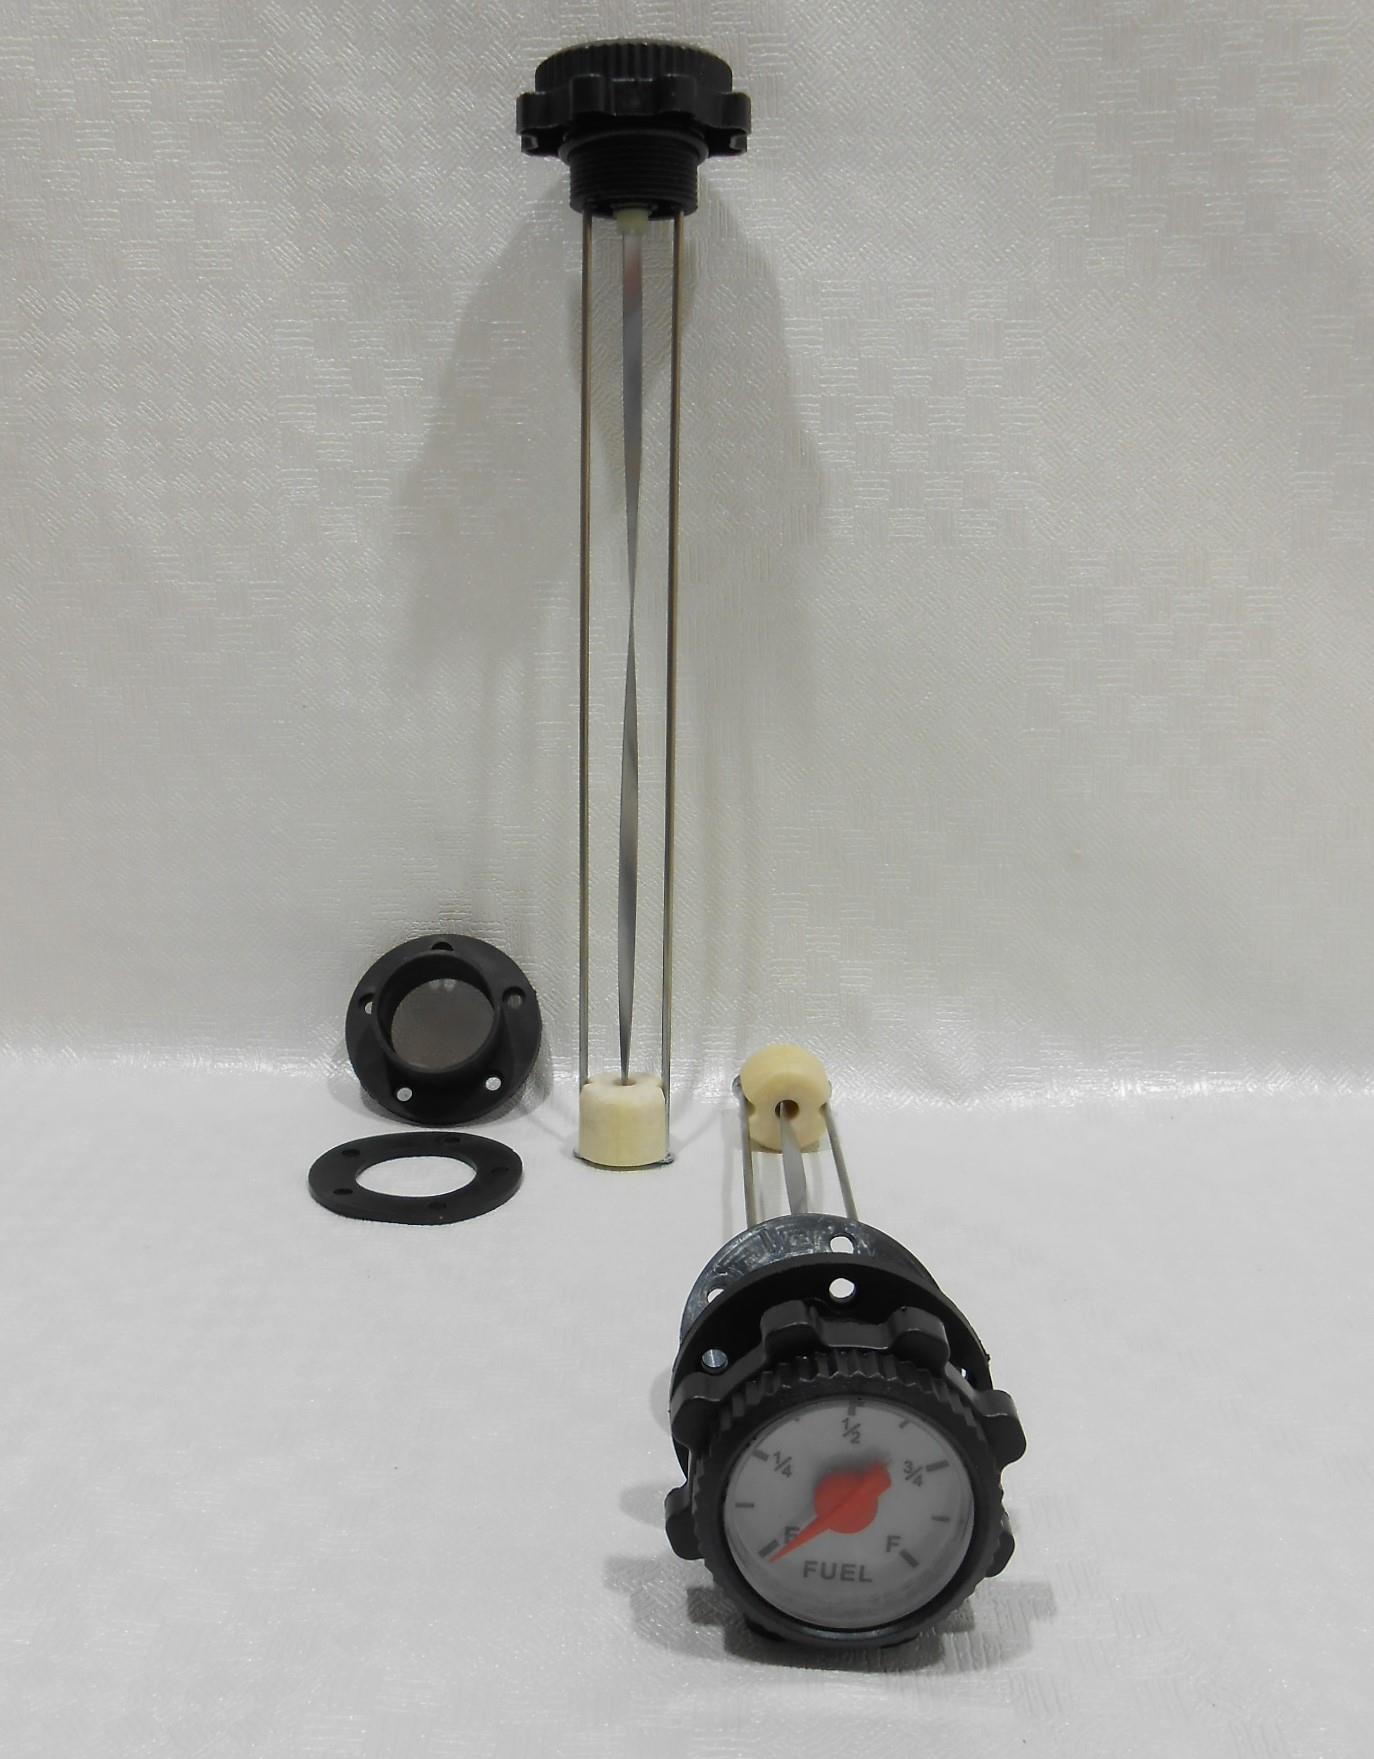 מצוף מכאני עומק 19 סמ עם שעון סקאלה שמראה את גובה הנוזל ללא צורך בחשמל מיועד לדלק ולמים